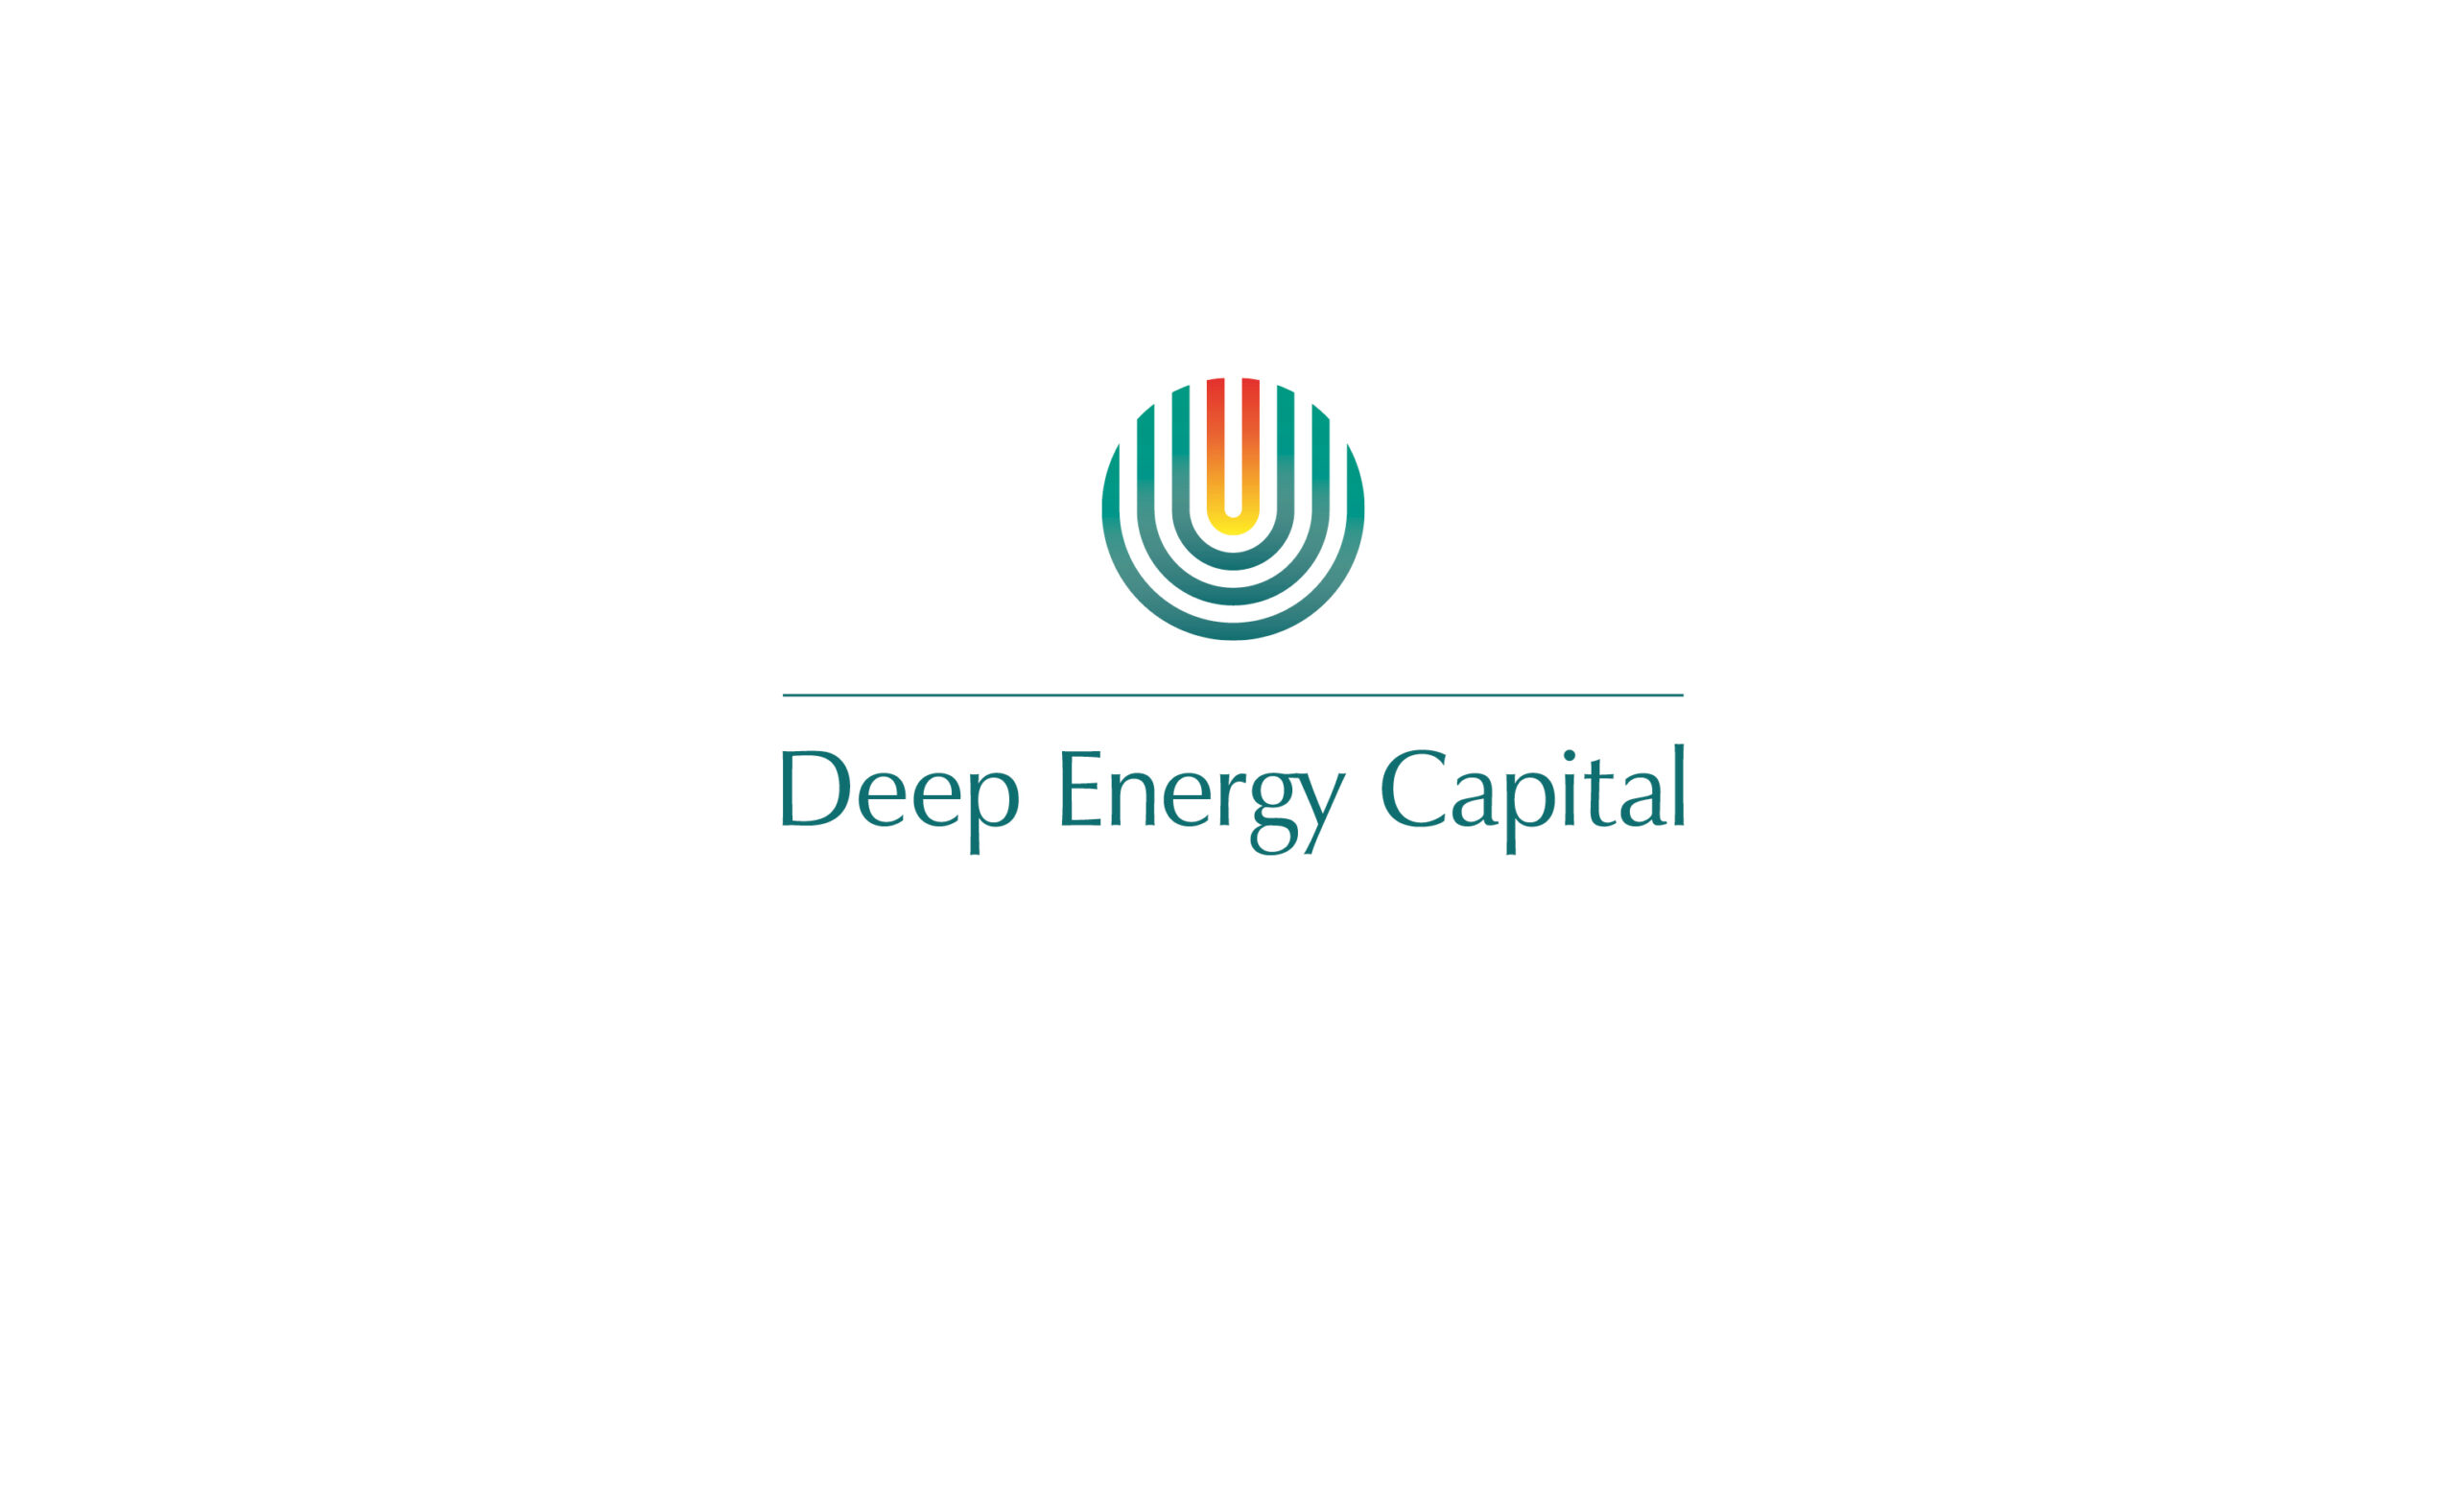 Deep Energy Capital